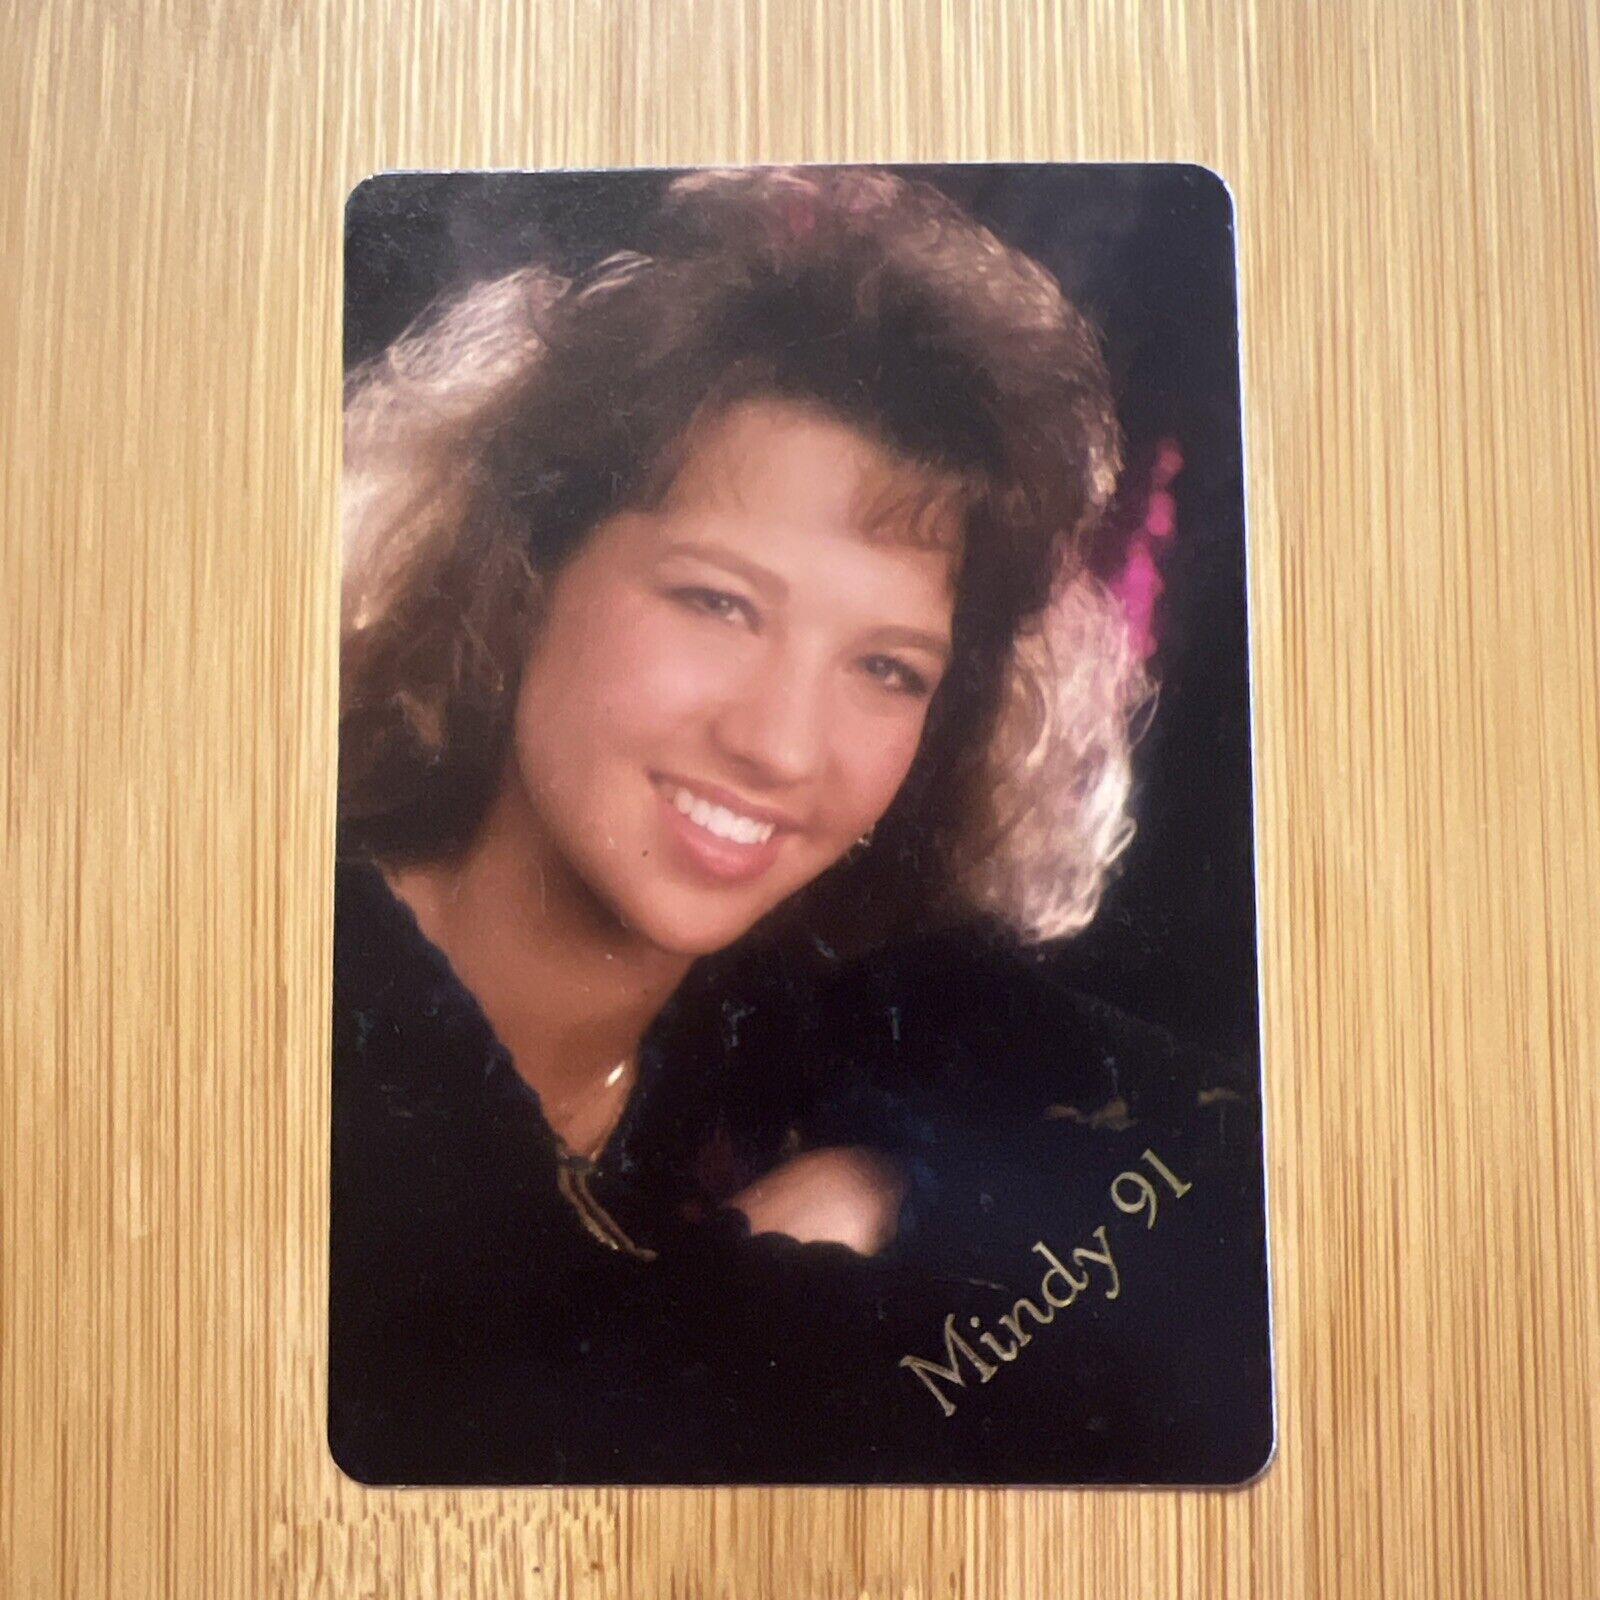 Vintage 3 1/4” x 2 1/4” Young Woman Color Studio Portrait Photo 1991 Big Hair